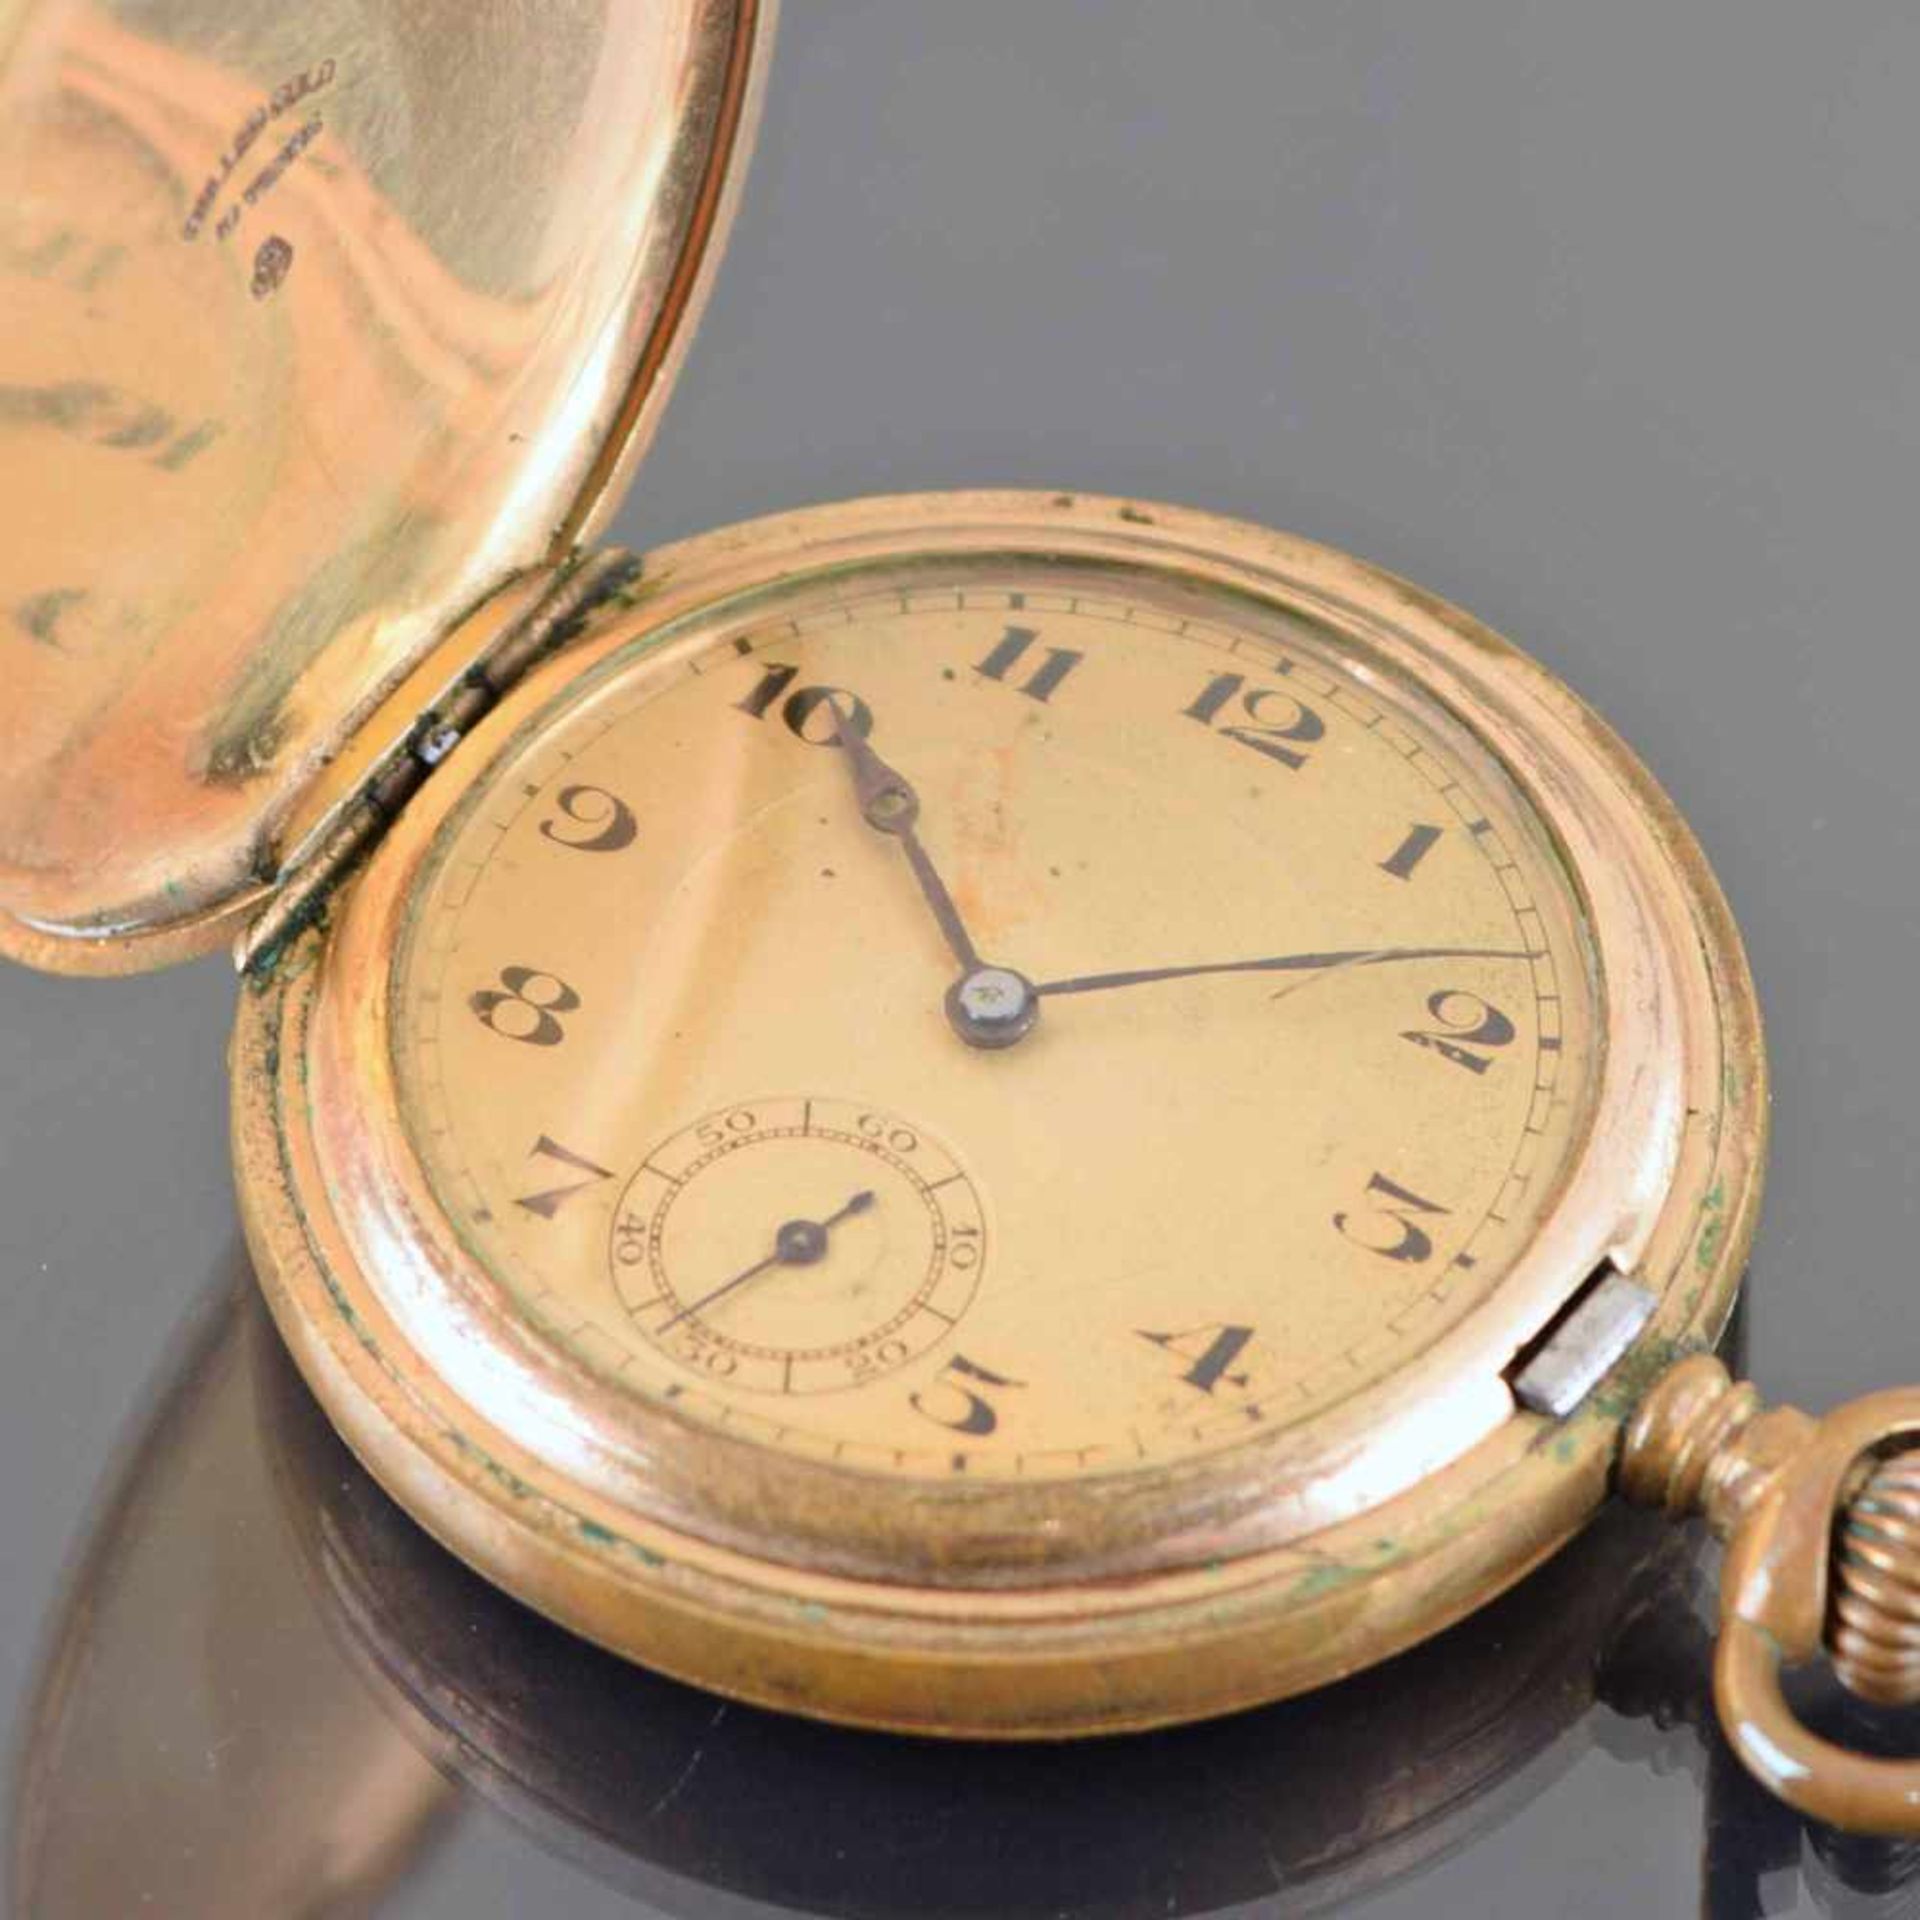 Sprungdeckeltaschenuhr Metallgehäuse vergoldet, Handaufzug, Stunde, Minute und kleine Sekunde auf